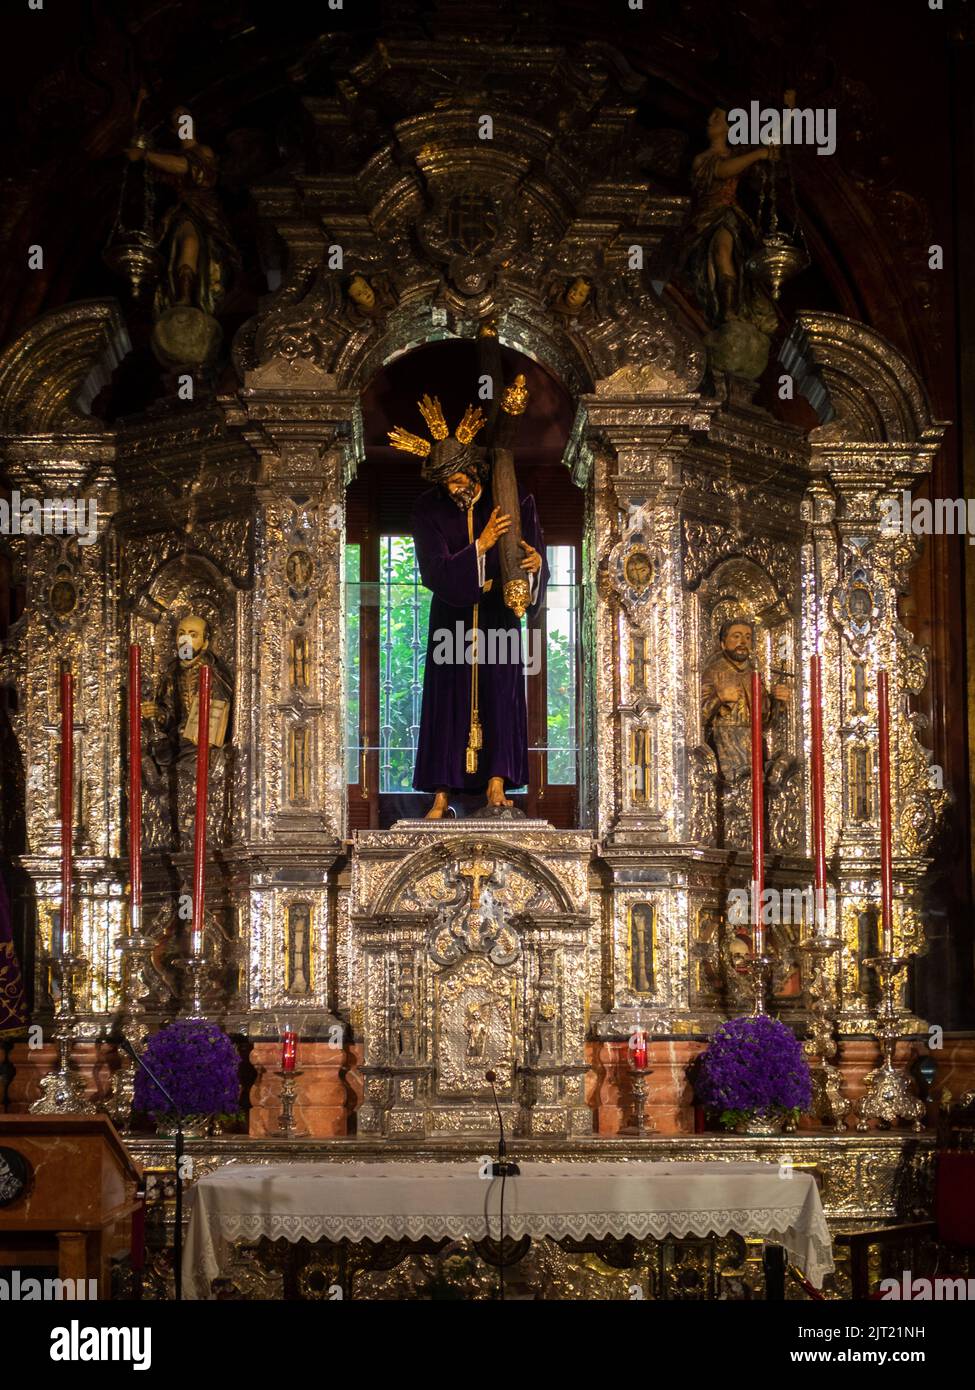 Sacrament Chapel altarpiece, Iglesia Colegial del Divino Salvador, Seville Stock Photo